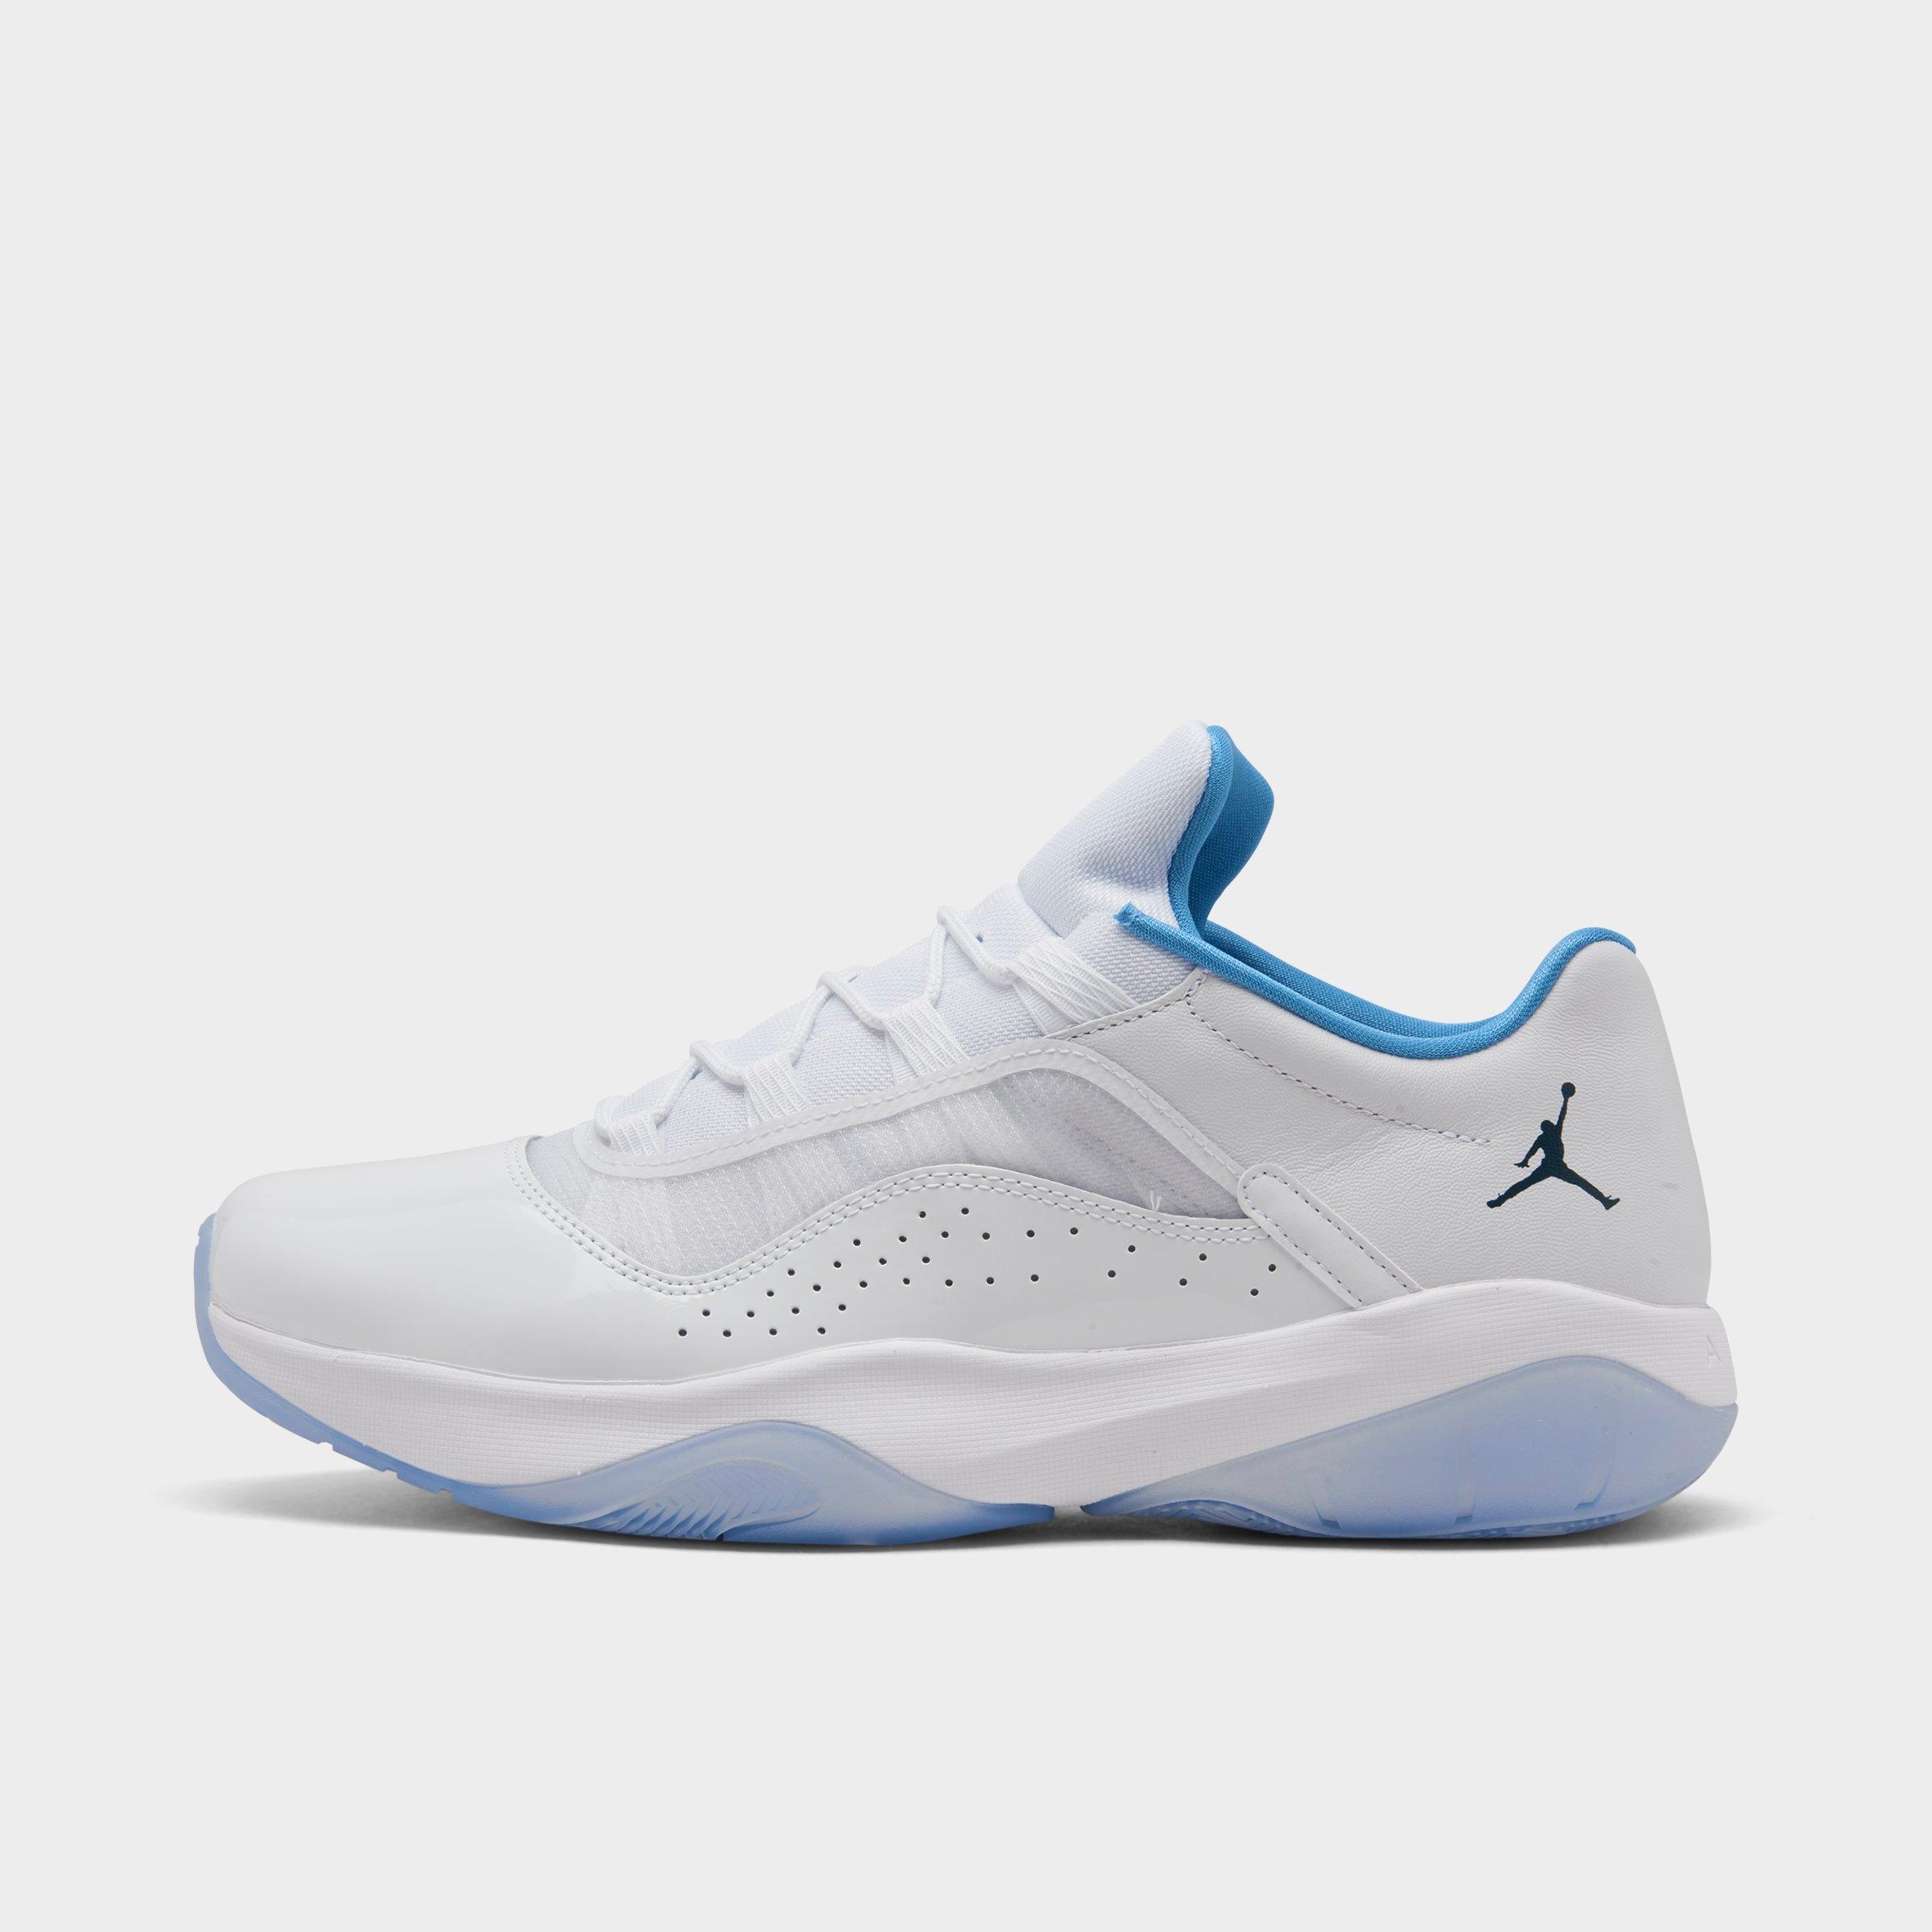 Jordan 11 Low Basketball Shoes| Sports